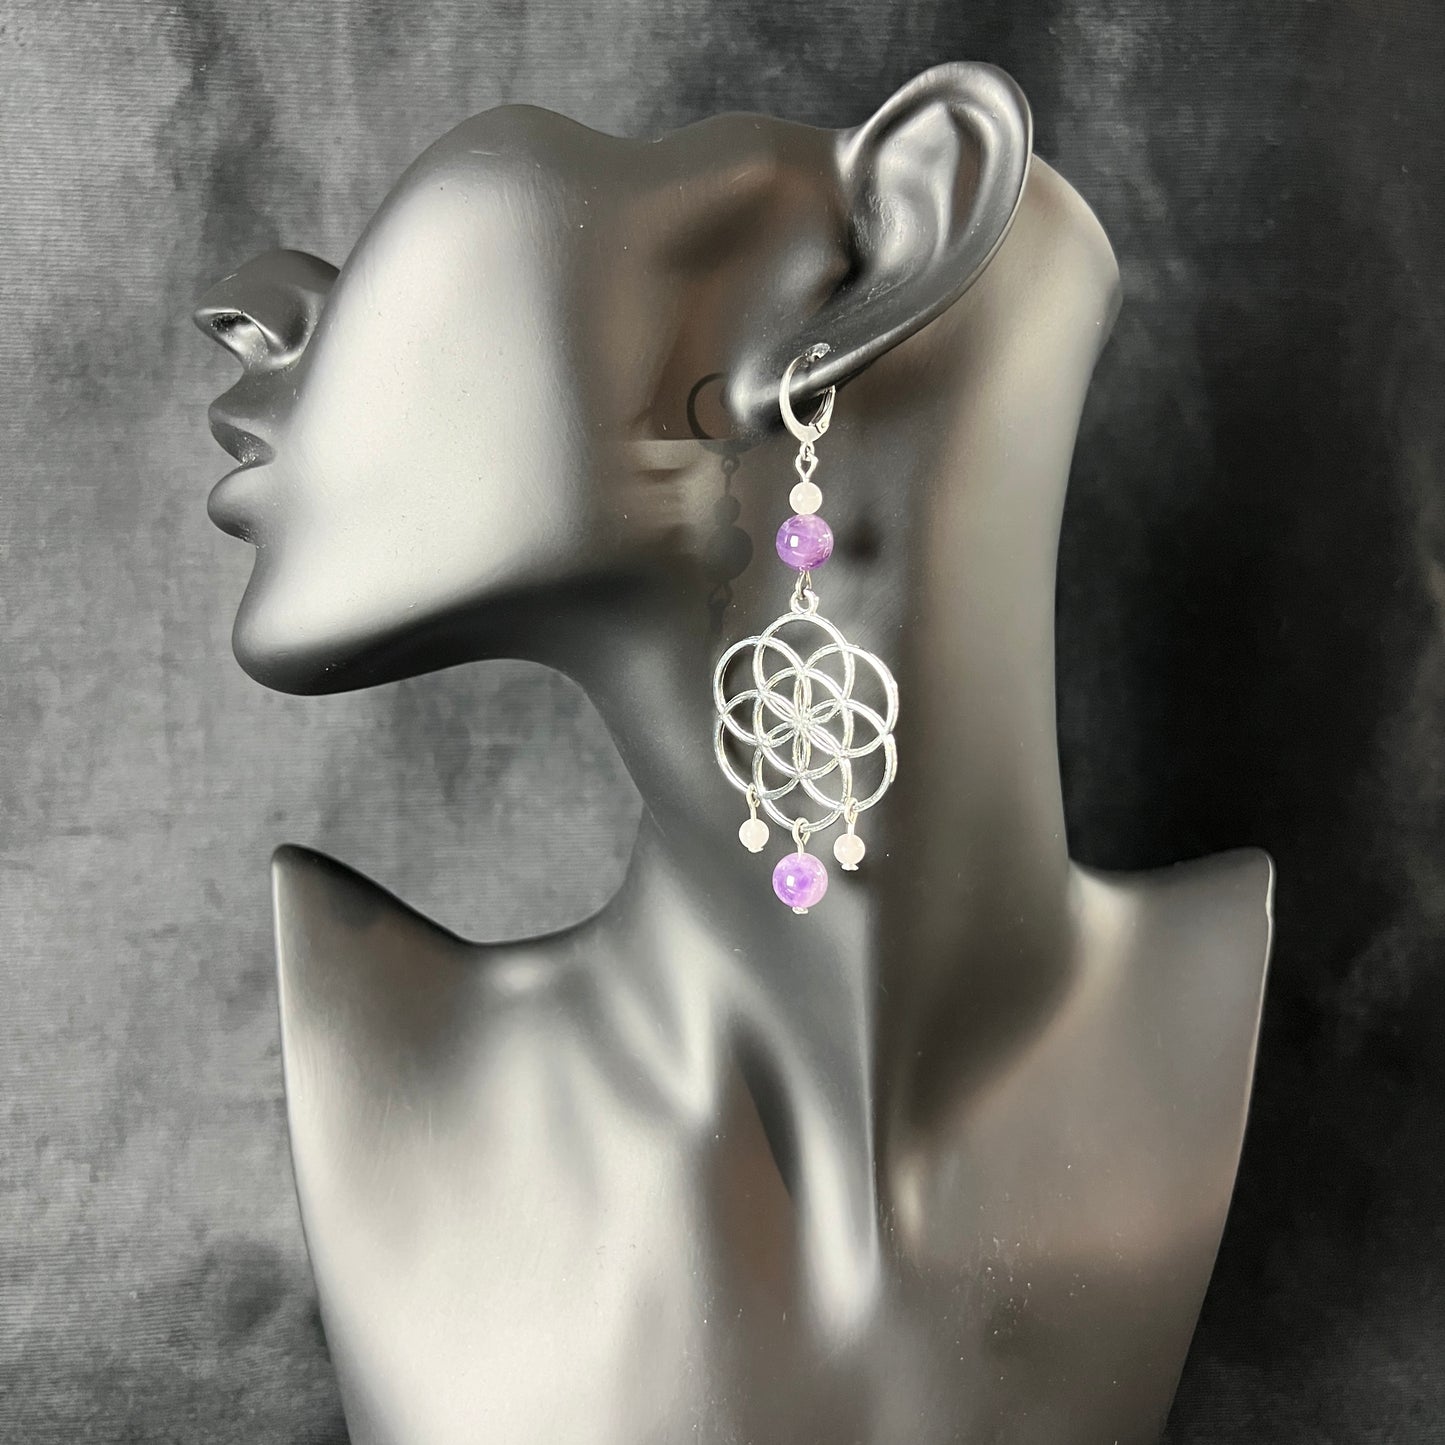 Flower of life earrings with amethyst and rose quartz spiritual awakening earrings gift for her